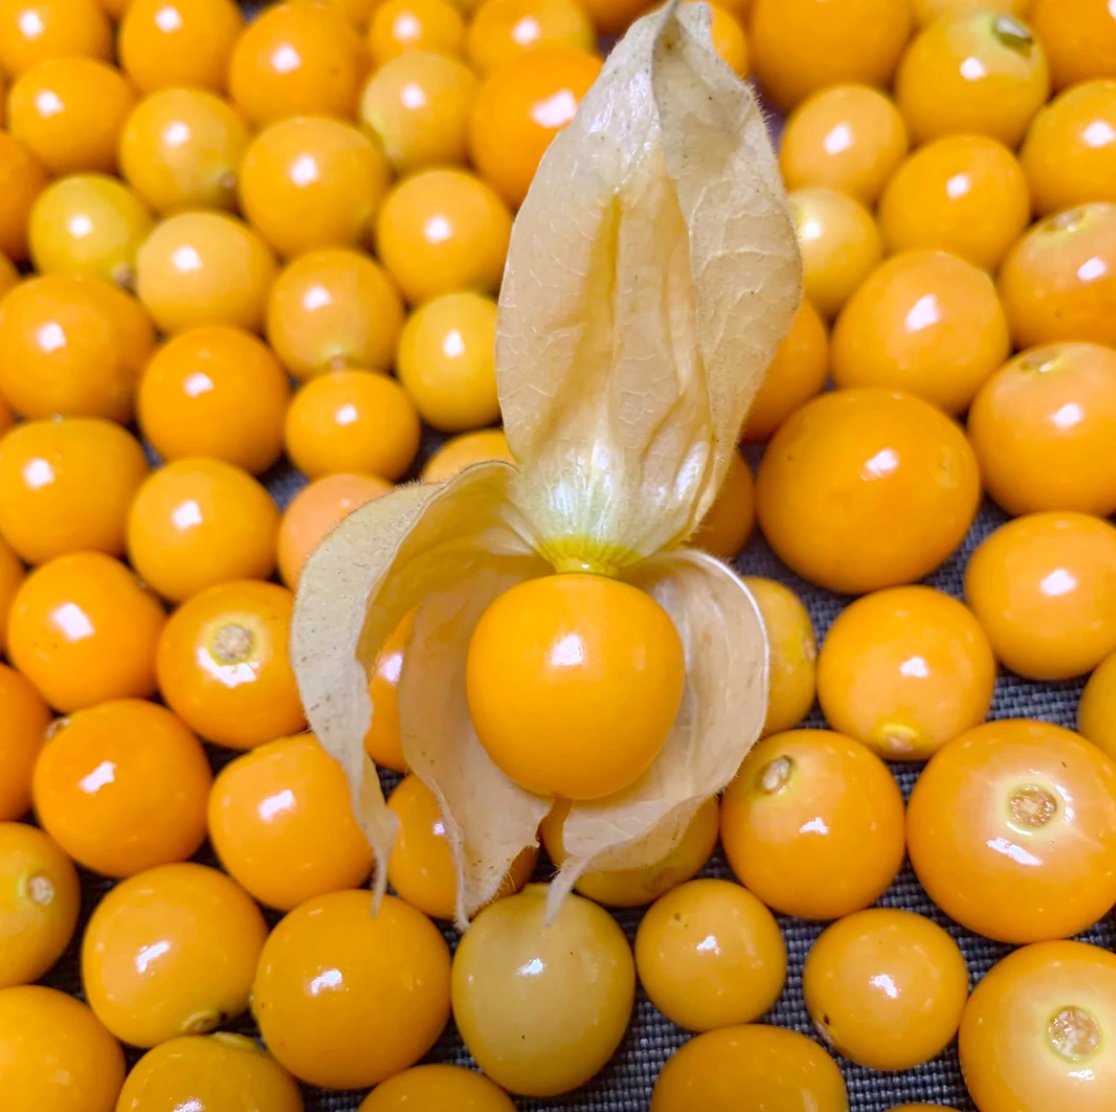 Golden berry frutita con mas de 7 nombres